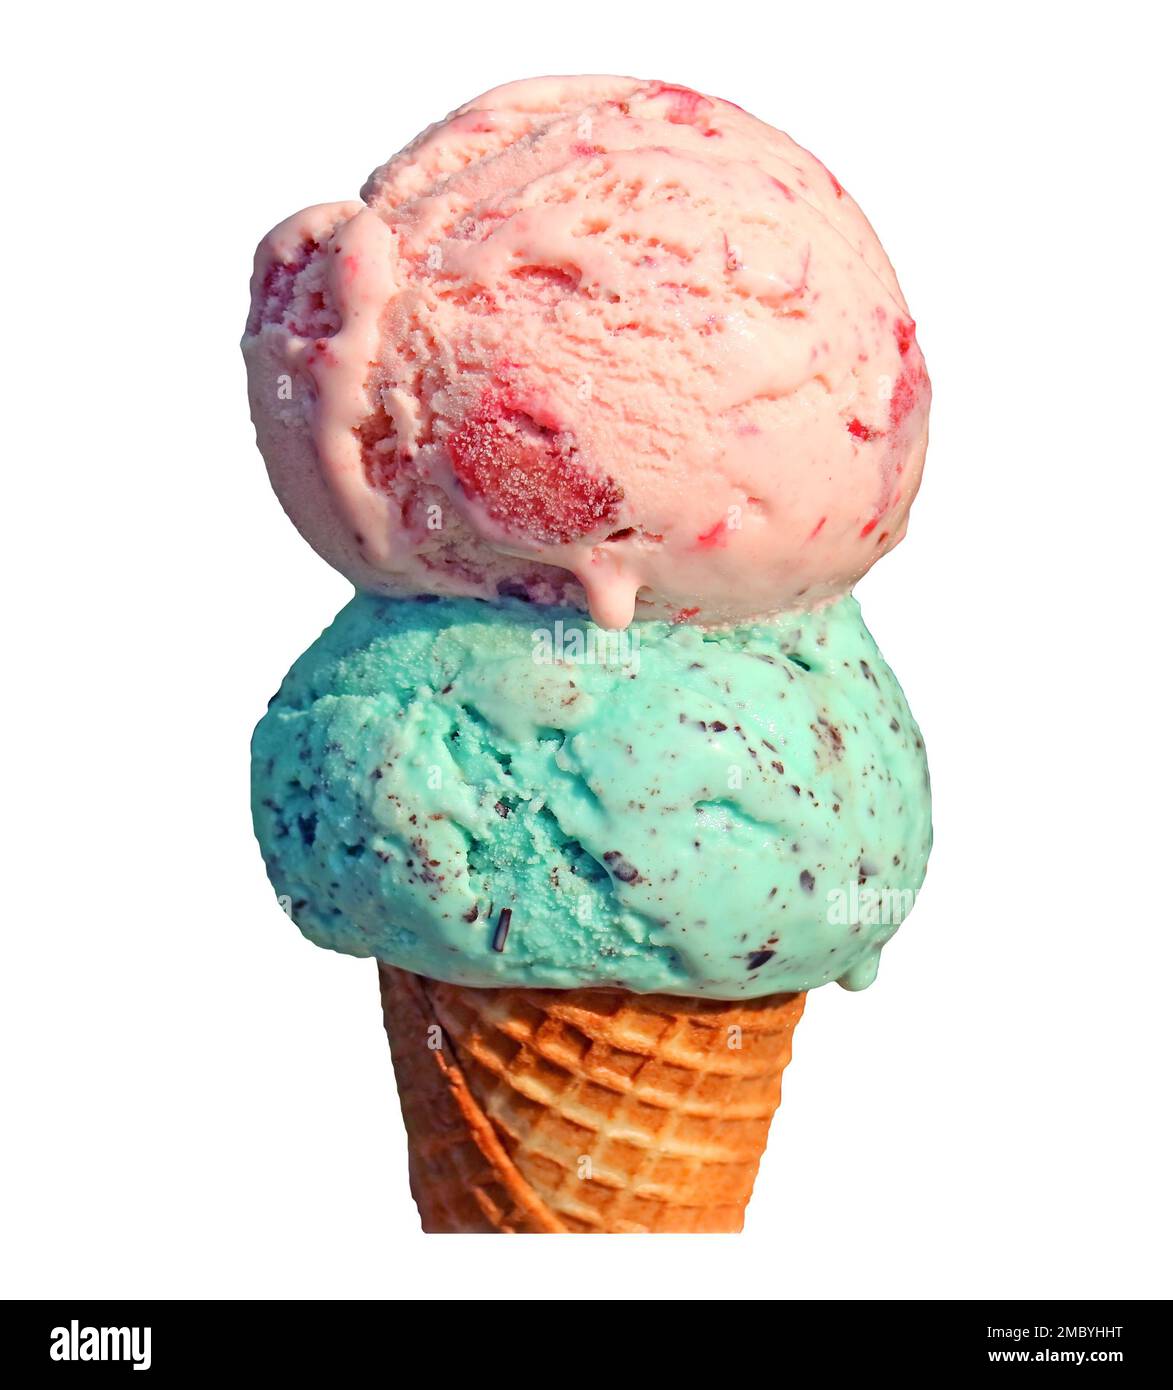 162 Double Scoop Ice Cream Cone Stock Photos - Free & Royalty-Free